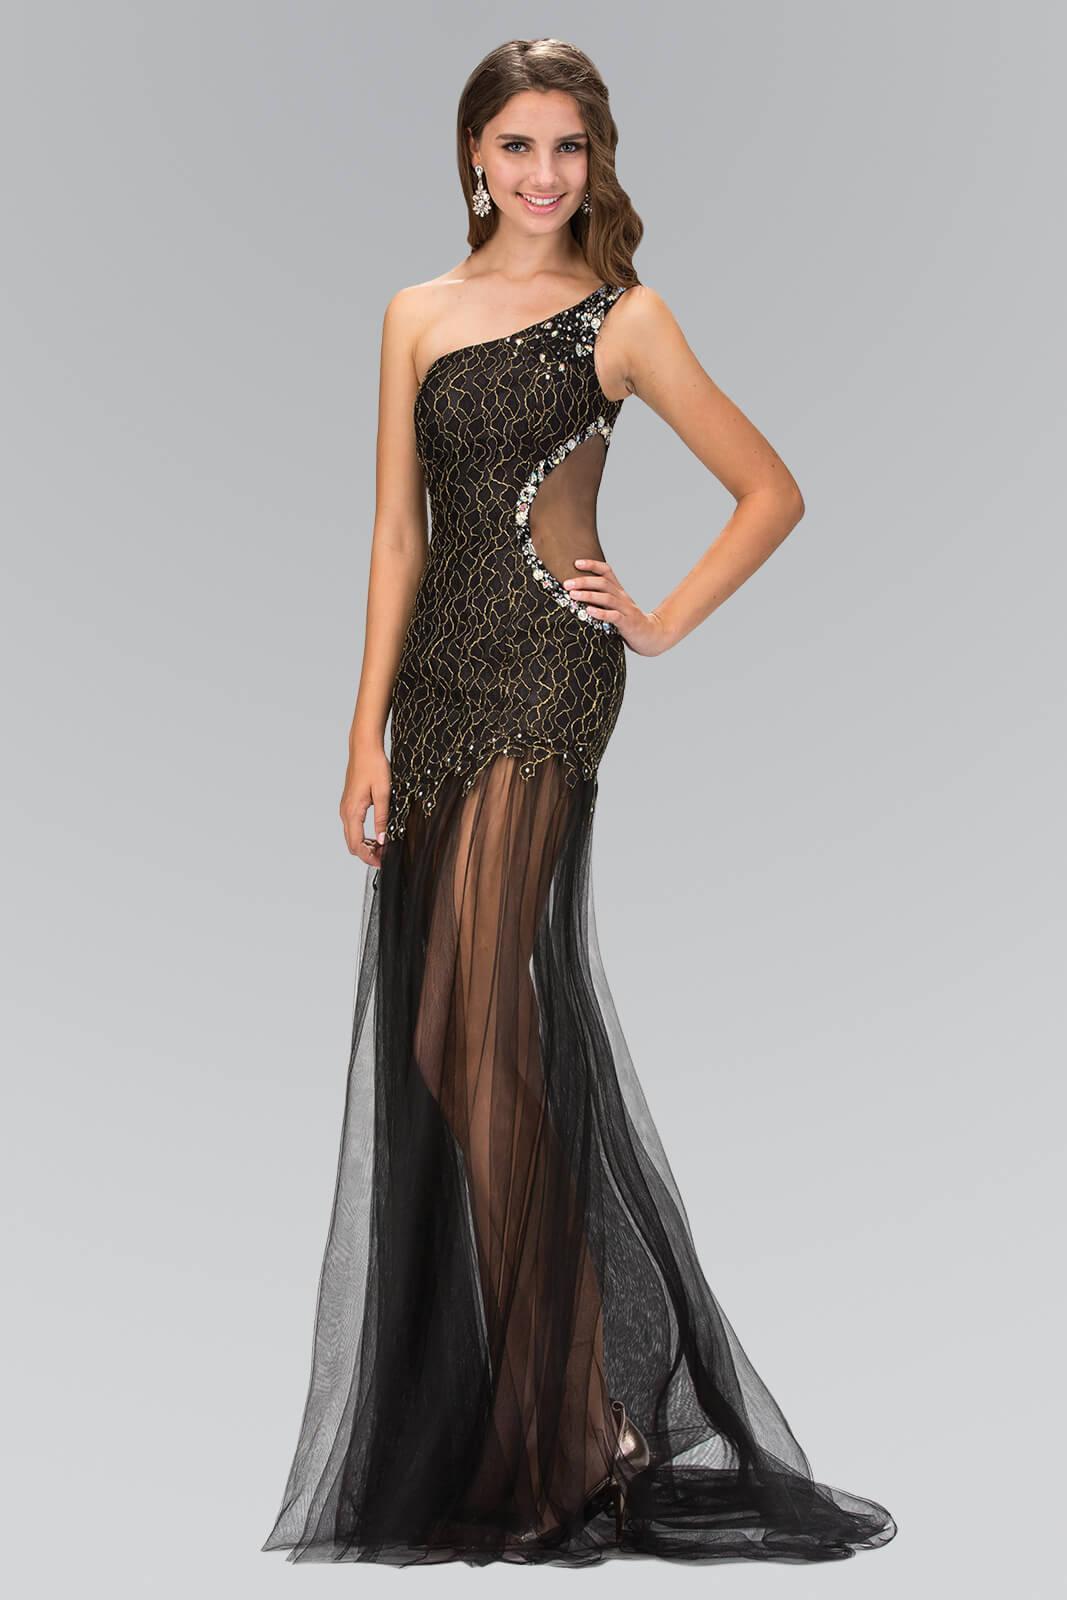 Prom Long One Shoulder Side Out Formal Dress - The Dress Outlet Elizabeth K